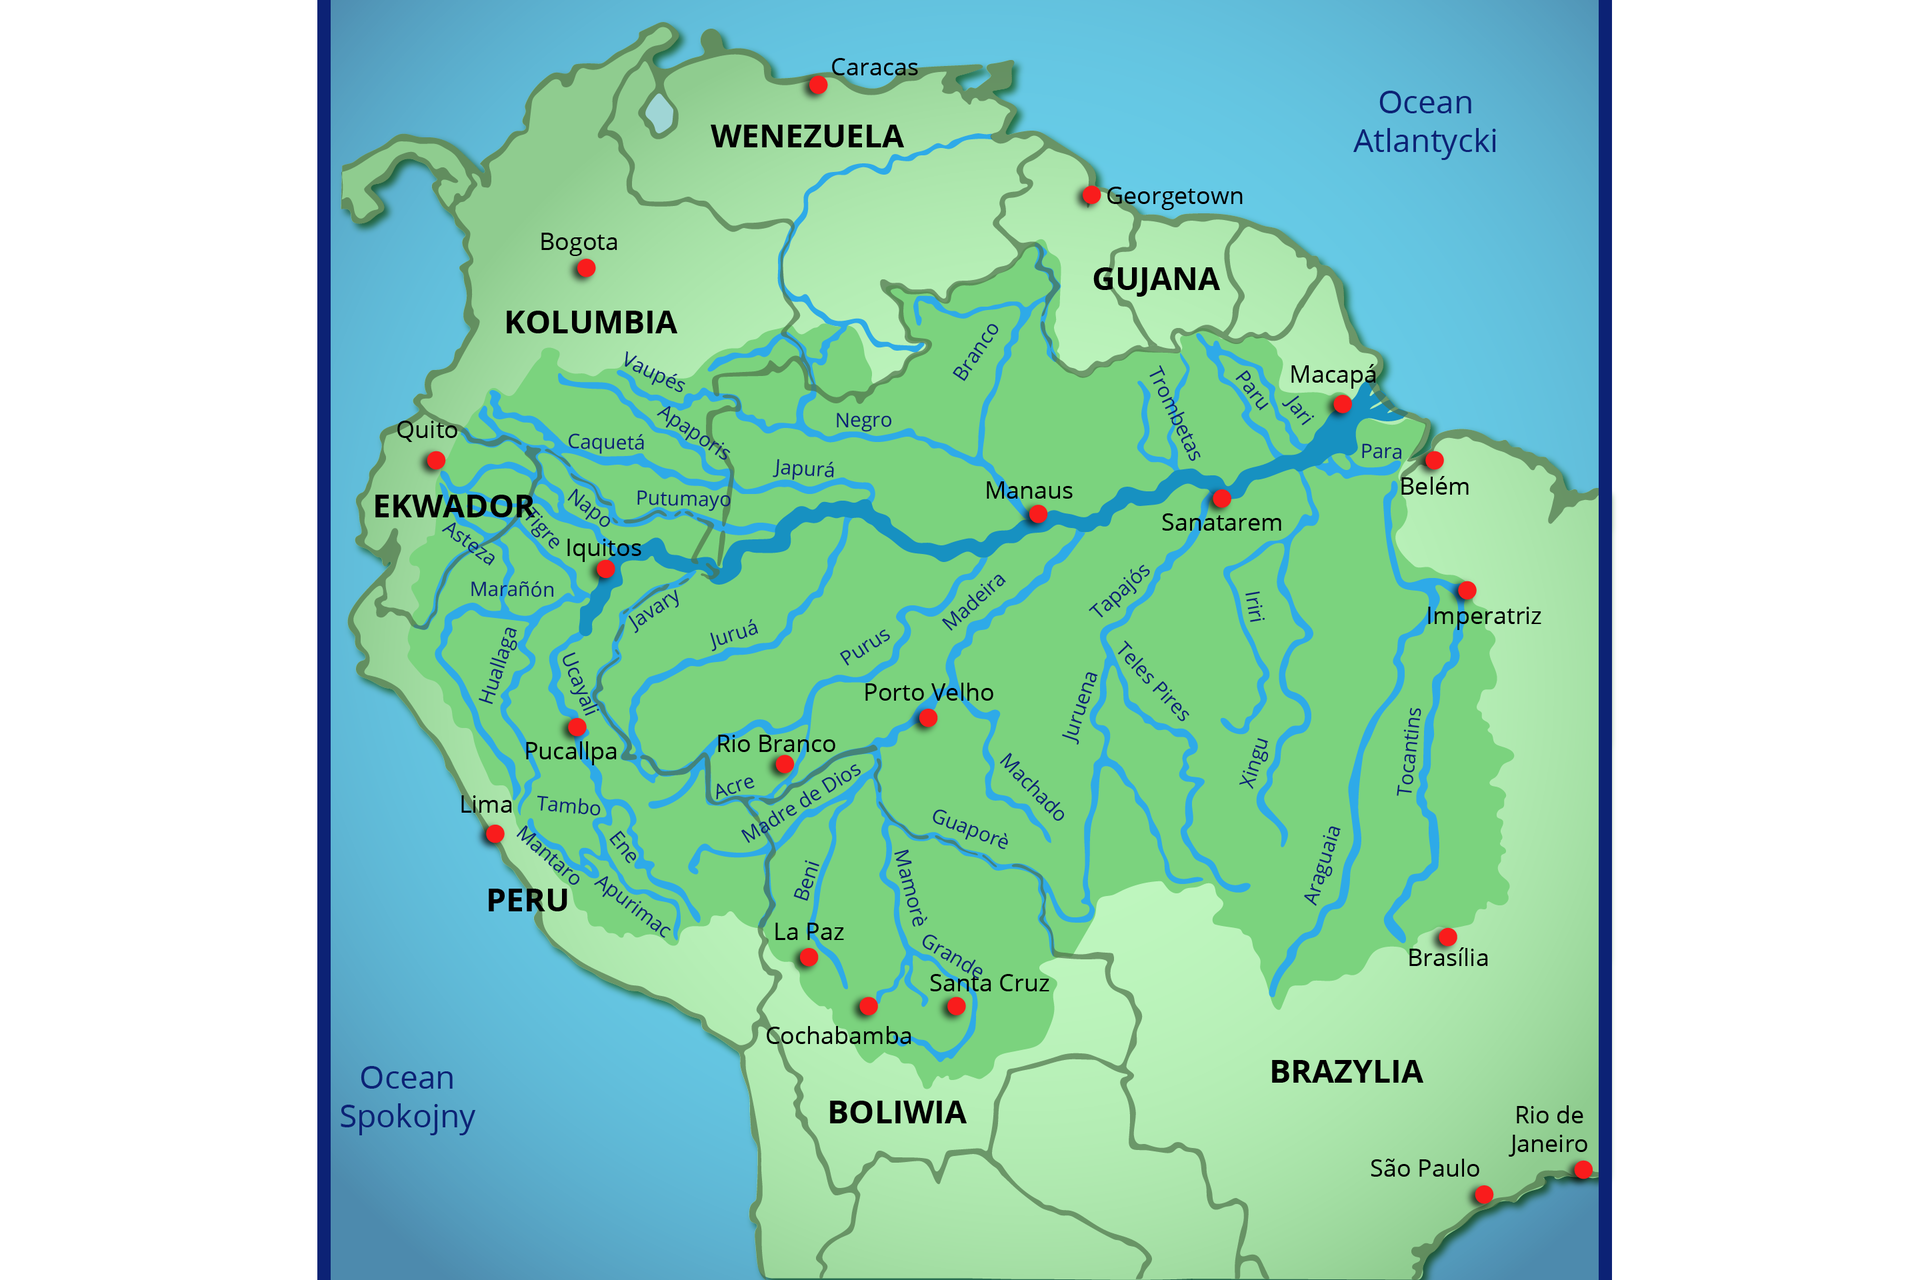 Na mapie Ameryki Południowej zaznaczono Amazonkę wraz z dorzeczami. Płynie przez Peru i Brazylię oraz częściowo, jako rzeka graniczna, przez Kolumbię. Niektóre dorzecza to: Purus - Peru/Brazylia, Madeira - Boliwia/Brazylia, Tocantins - Brazylia, Araguaia - Brazylia (dopływ Tocantins), Rio Negro - Ameryka Południowa, Xingu - Brazylia, &lt;/Tapajós Brazylia, Guaporé Brazylia/Boliwia. 